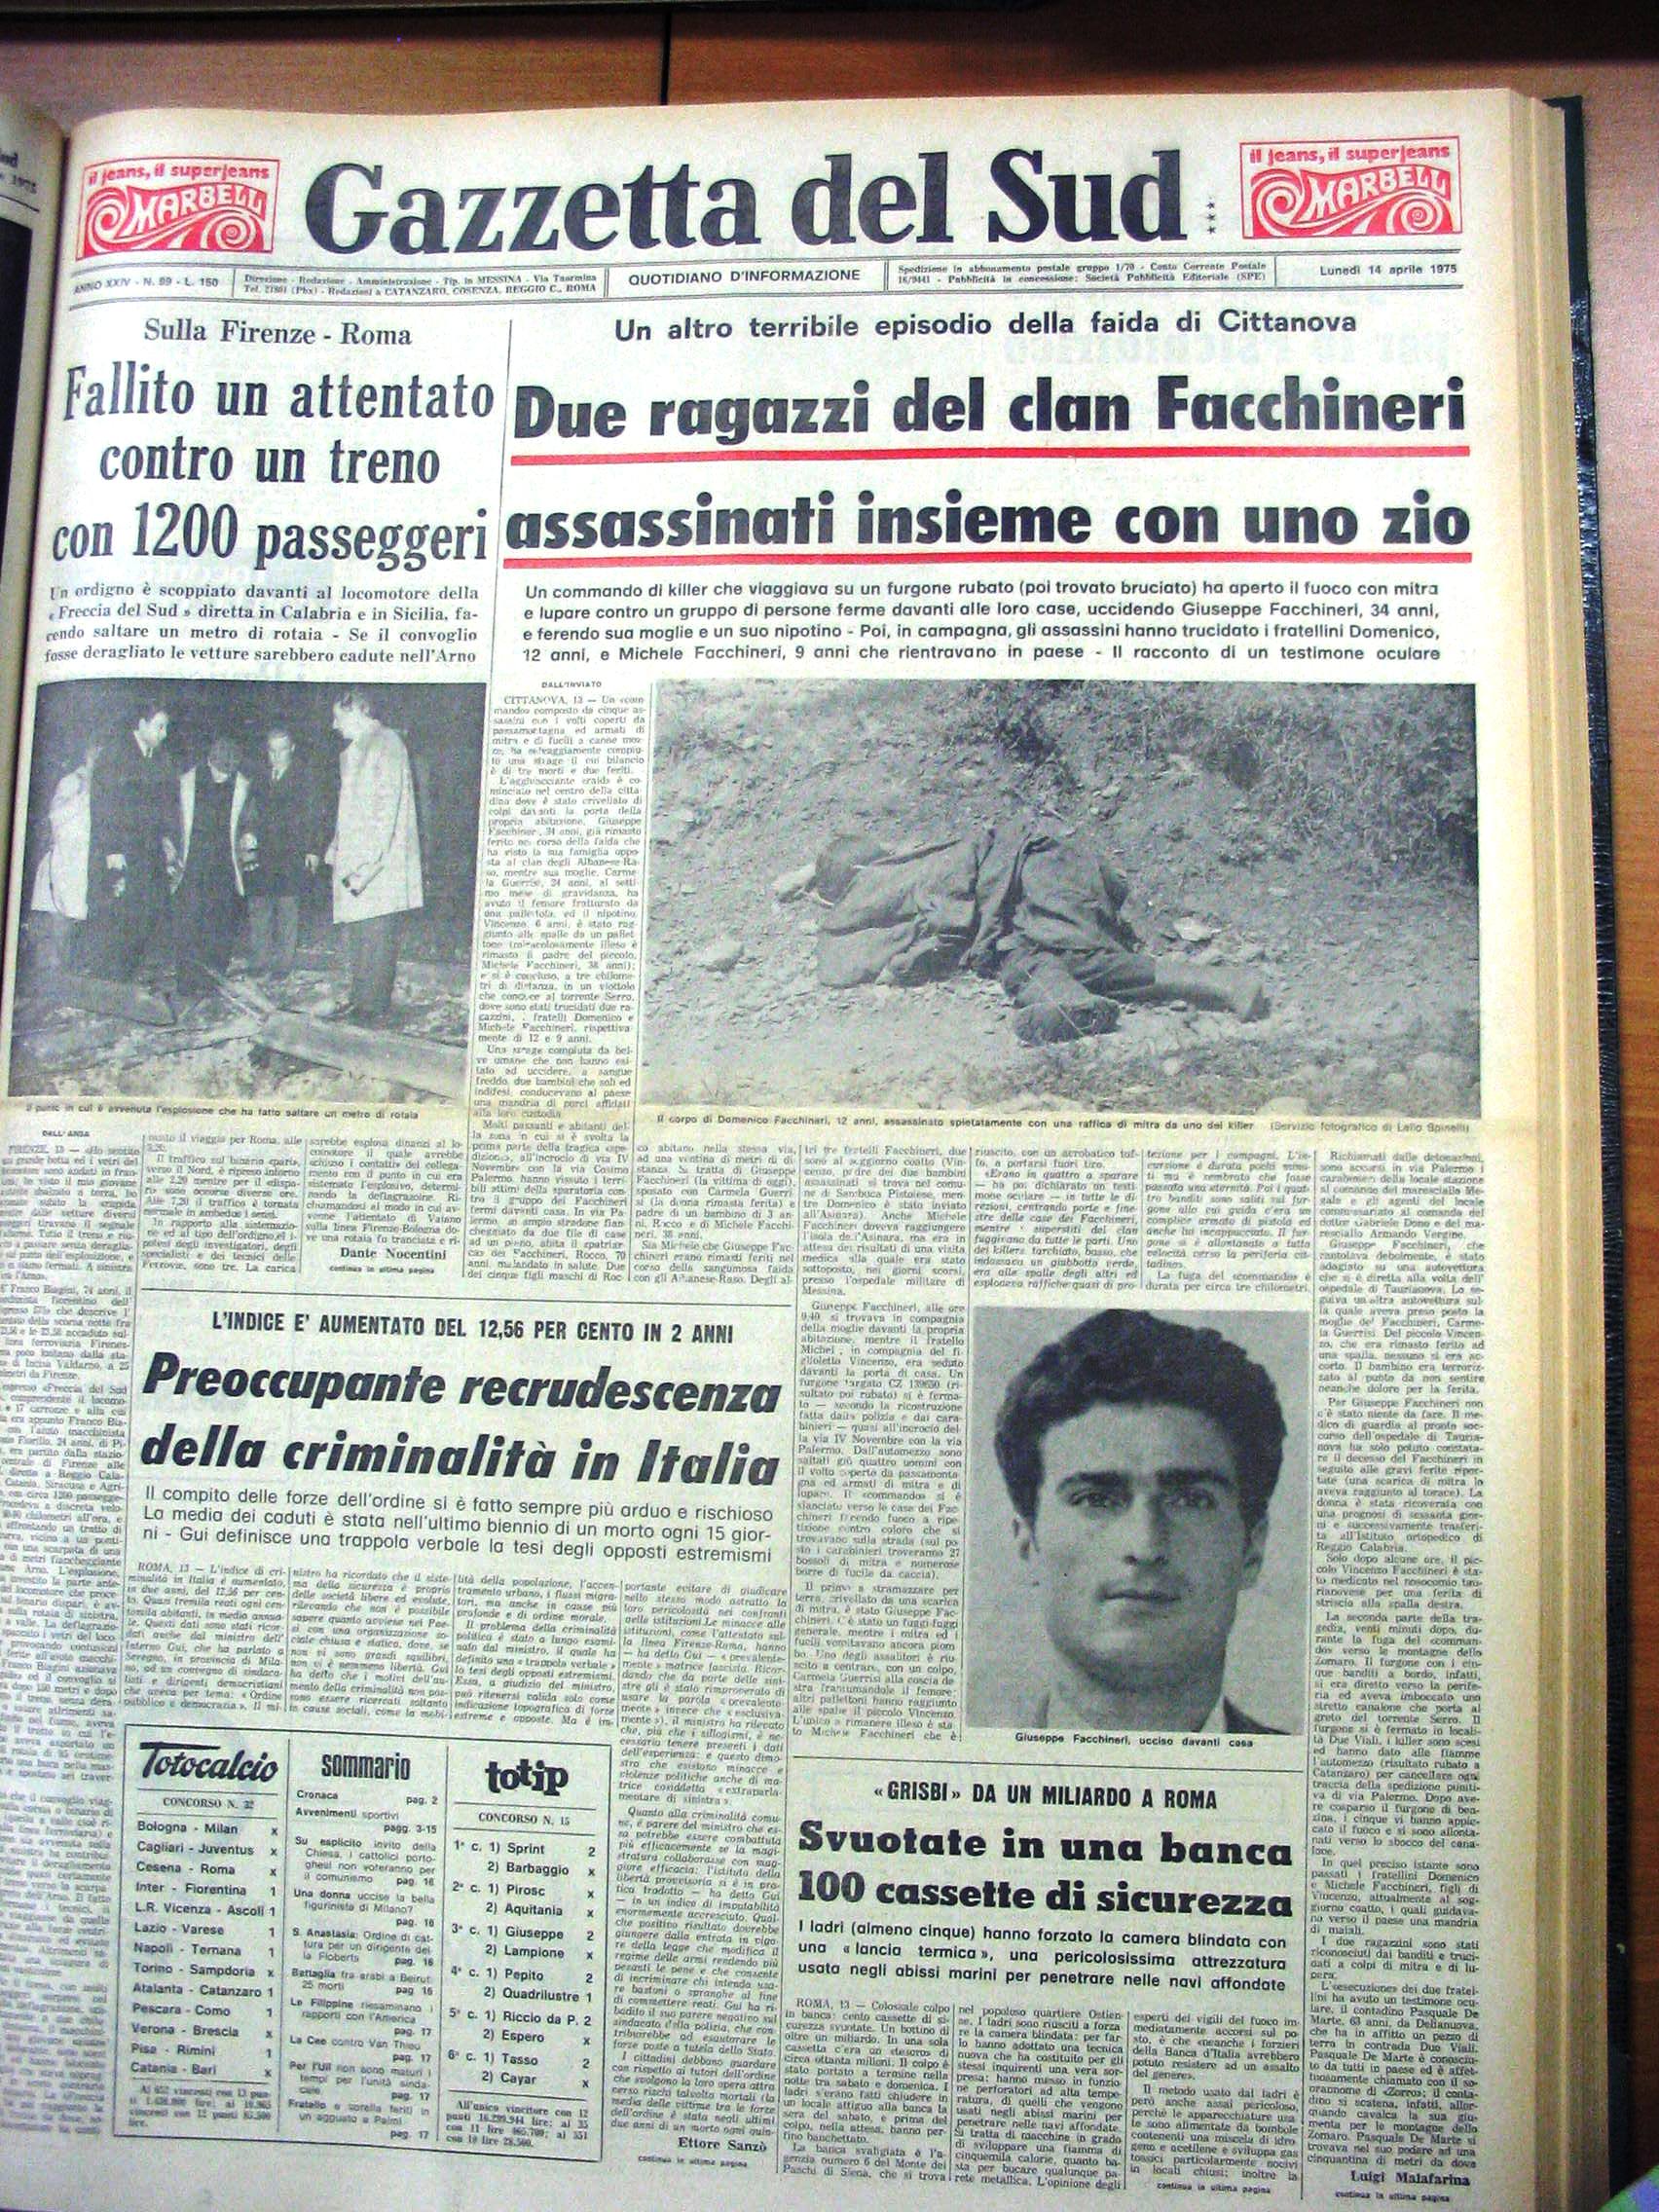 Visualizza Domenico e Michele Facchineri, la notizia del ritrovamento/file1